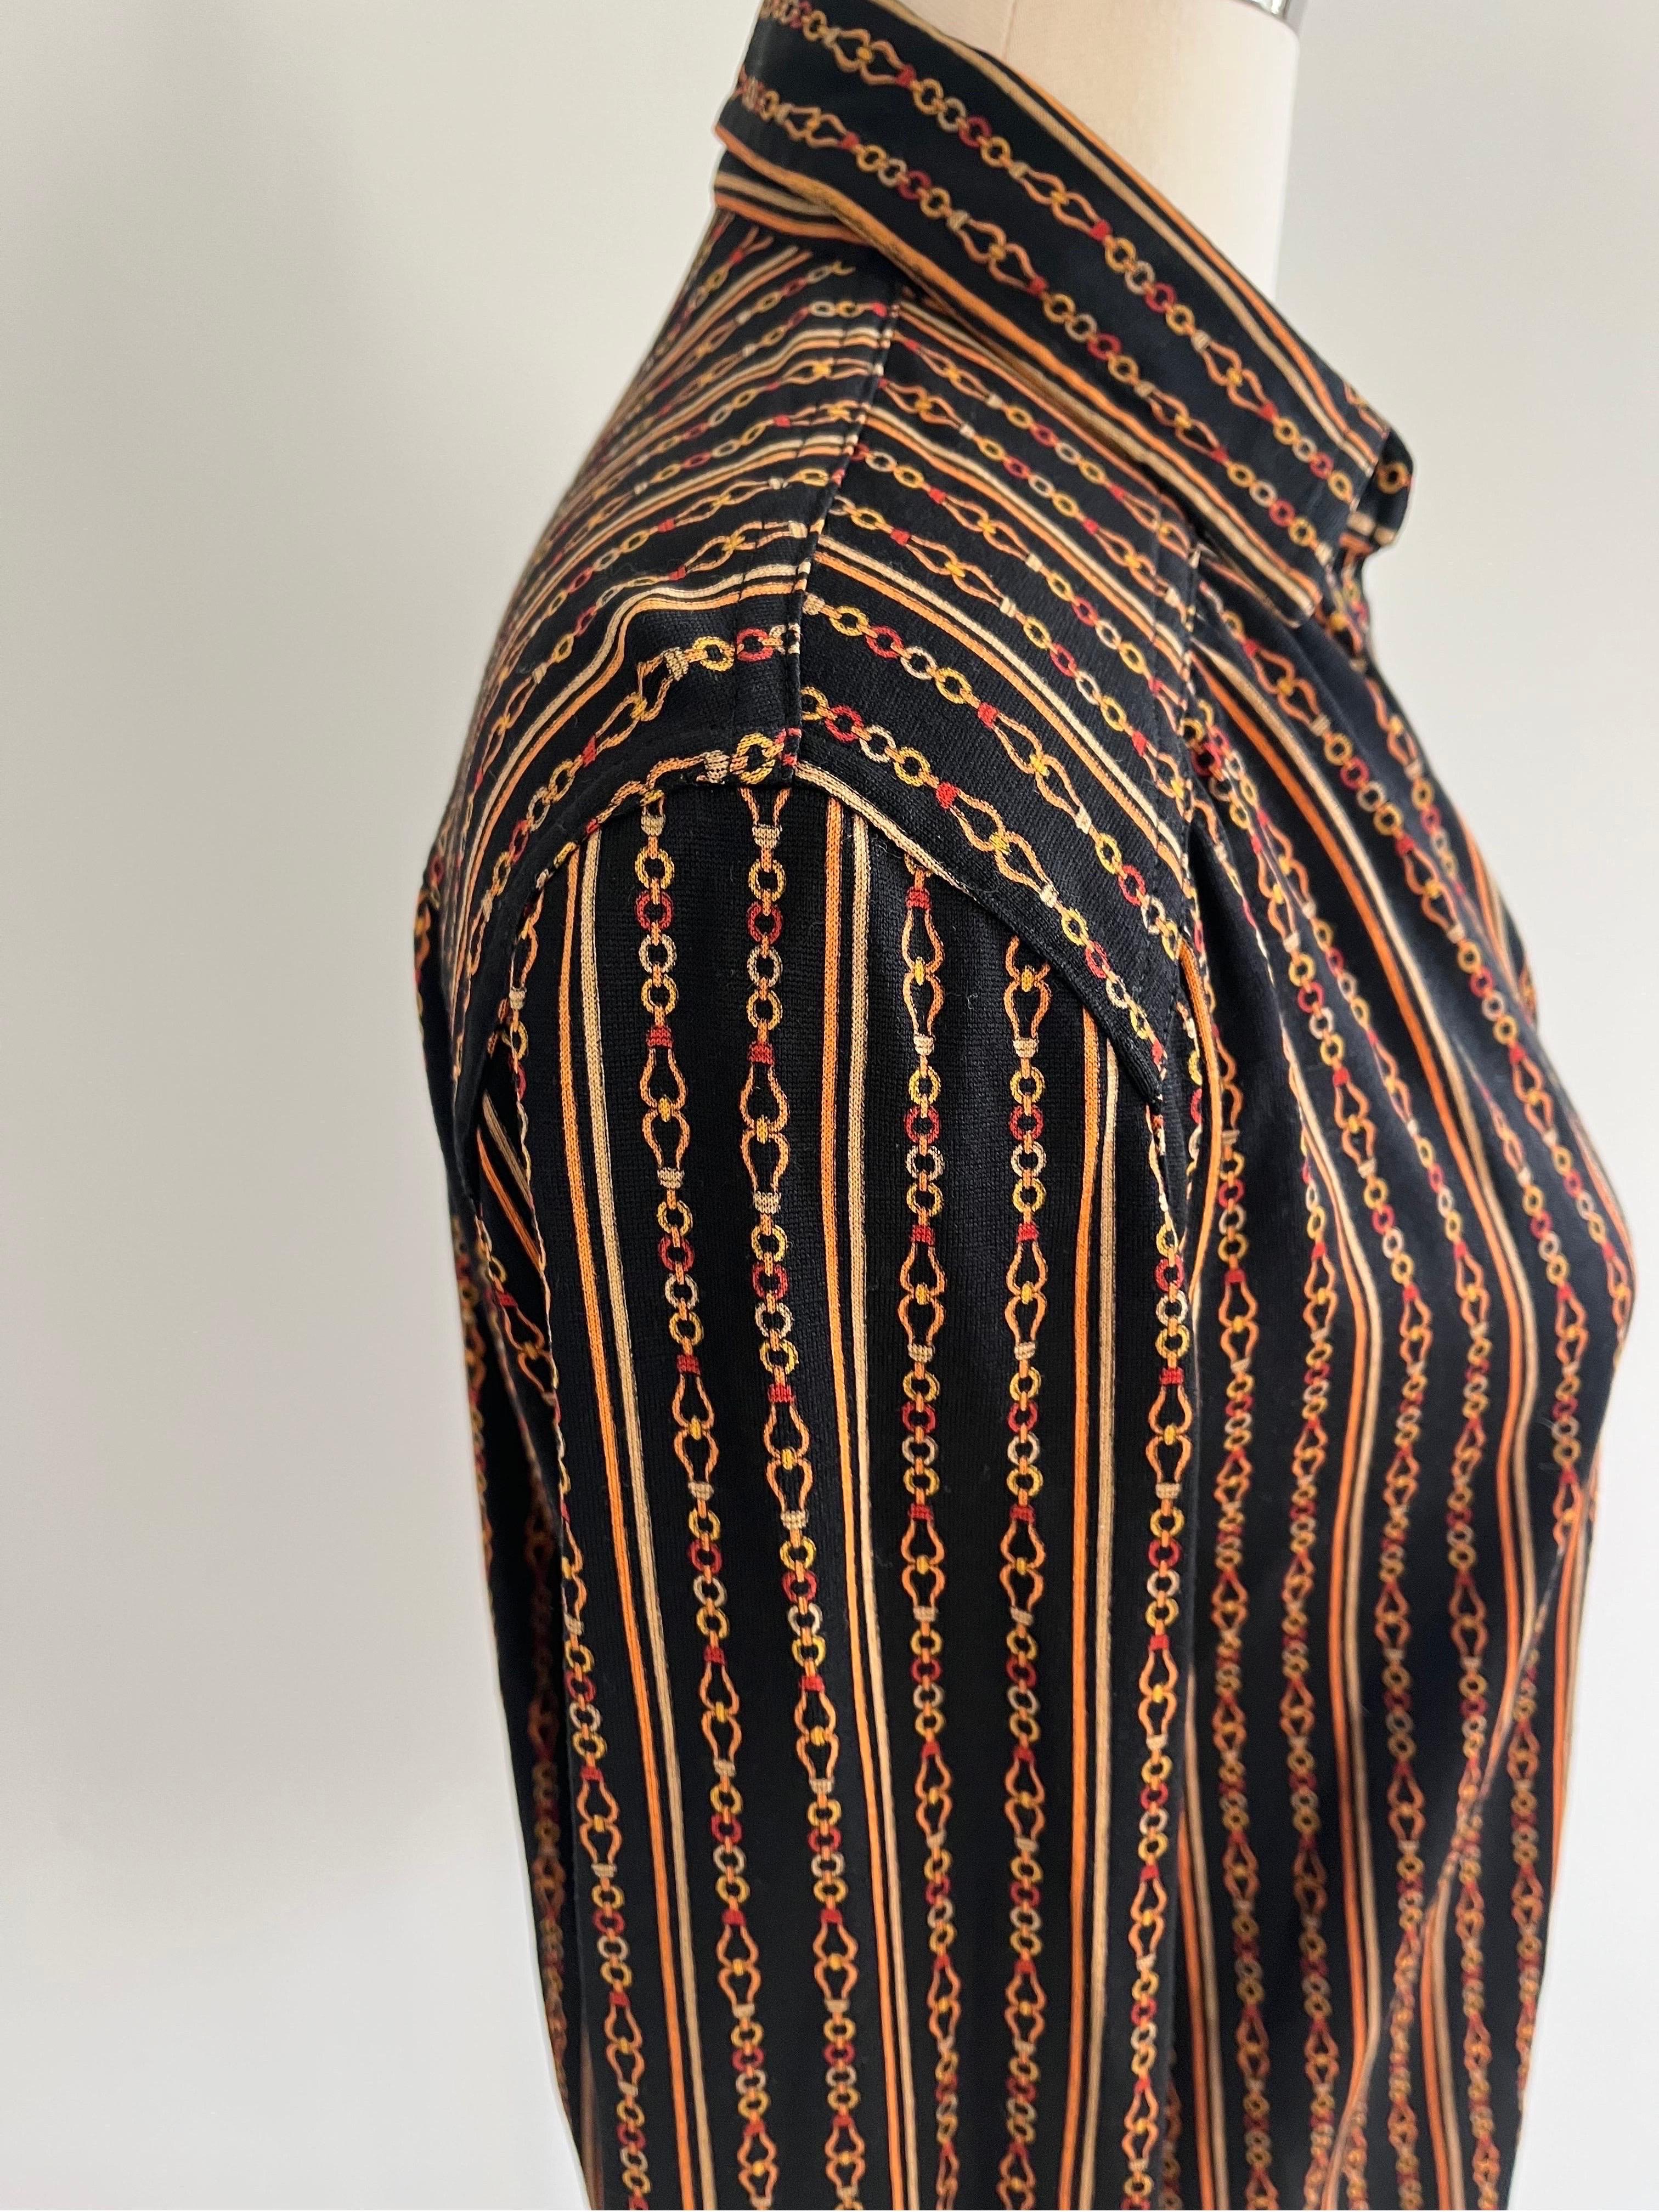 Celine 70er Jahre Button Down aus dünner Wolle mit vertikalen Linien des klassischen Celine-Kettenmusters auf schwarzem Hintergrund. Celine